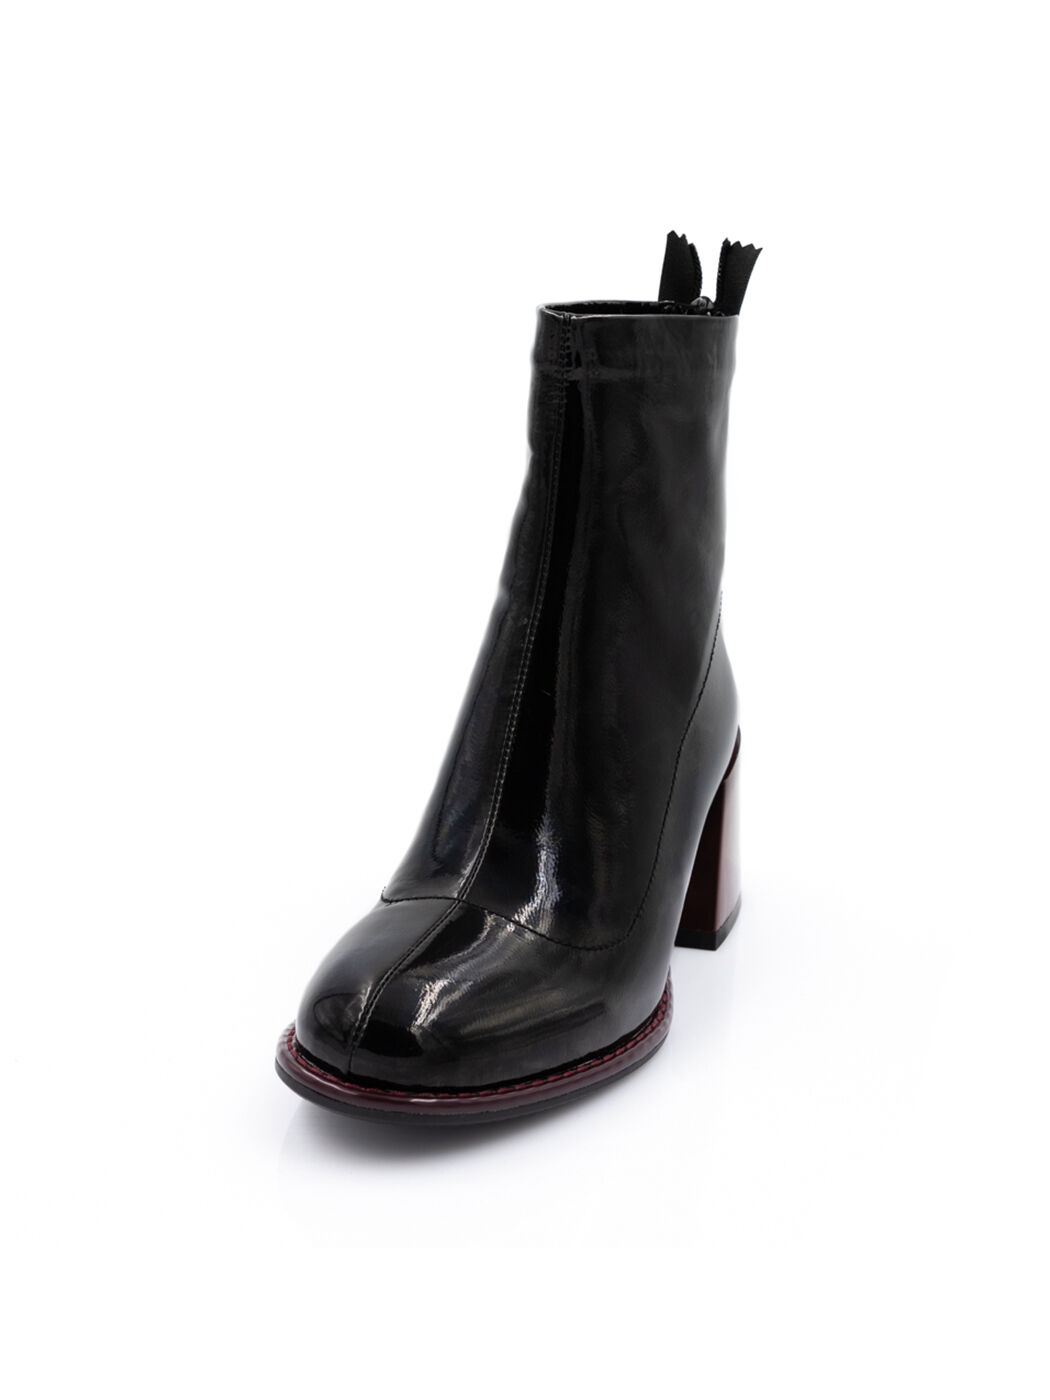 Ботинки женские черные искусственный лак каблук устойчивый демисезон вид 0